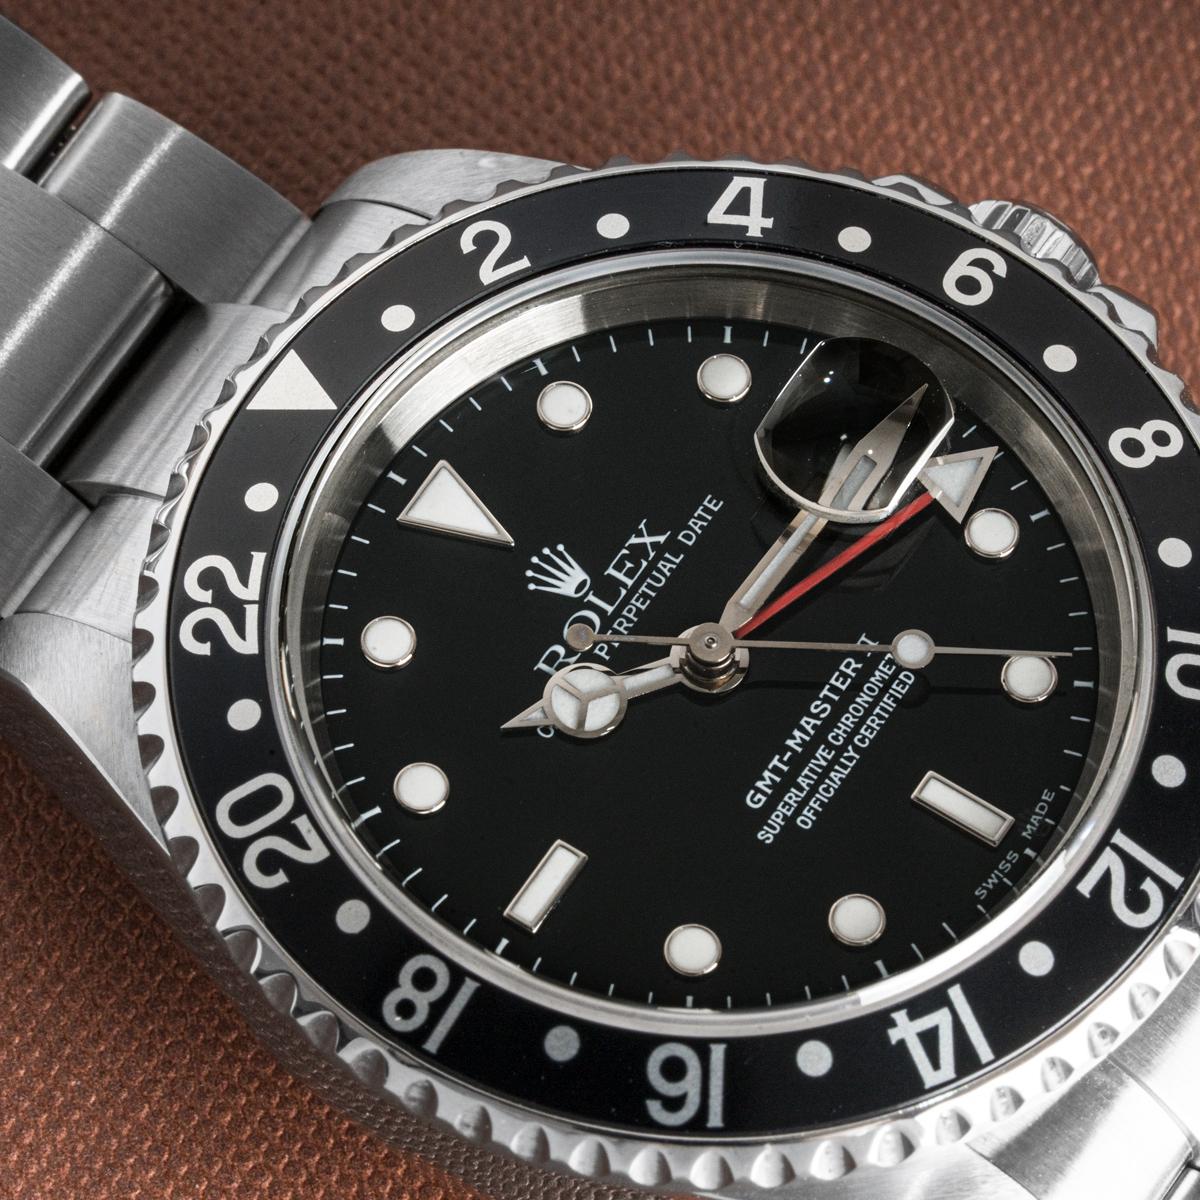 Une GMT-Master II en acier inoxydable de Rolex. Le cadran noir est doté d'un guichet de date et d'une aiguille rouge pour le second fuseau horaire. La lunette rotative bidirectionnelle est également dotée d'un affichage 24 heures.

La montre est